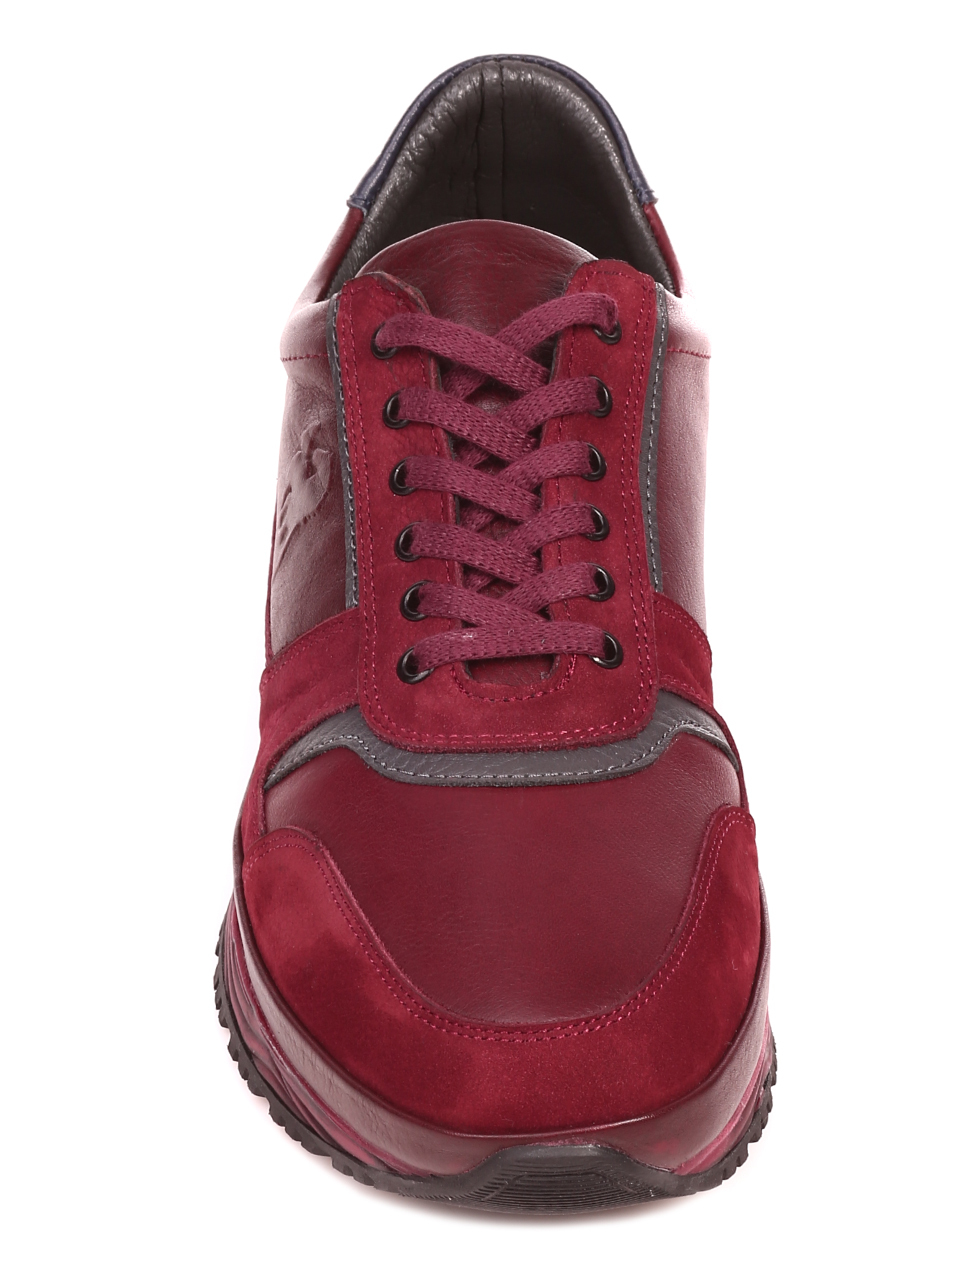 Ежедневни мъжки обувки от естествена кожа и естествен набук 7AT-21805 red